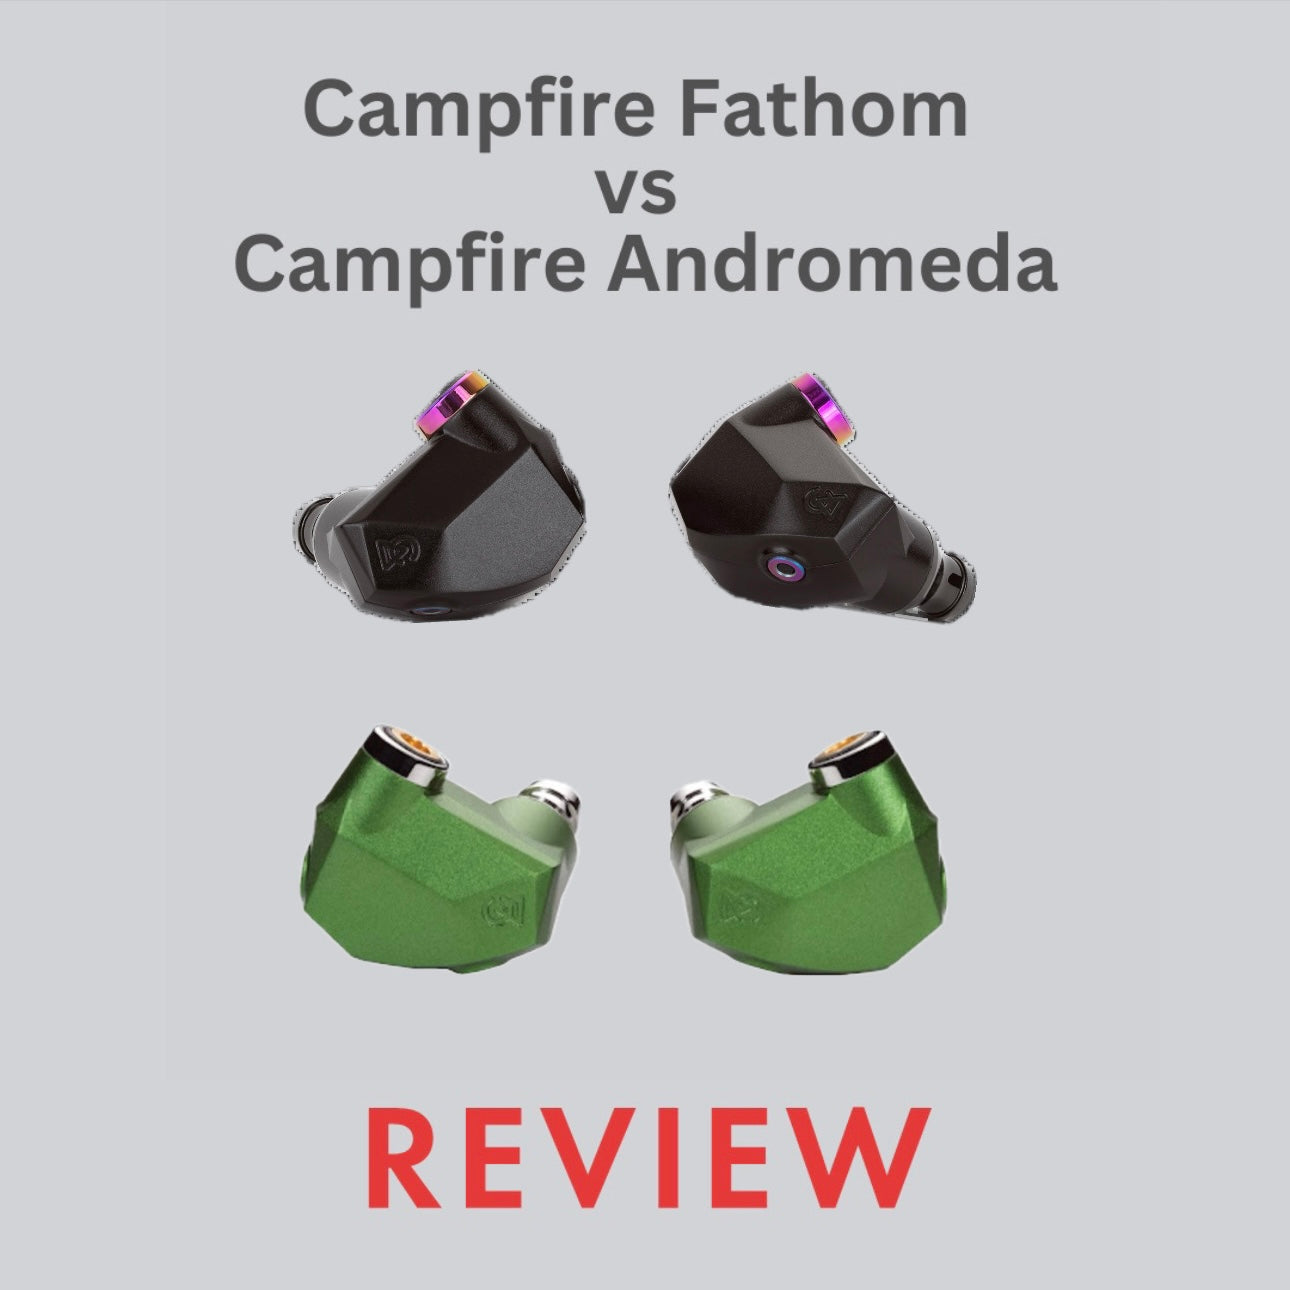 Campfire Fathom vs Andromeda Comparison Review